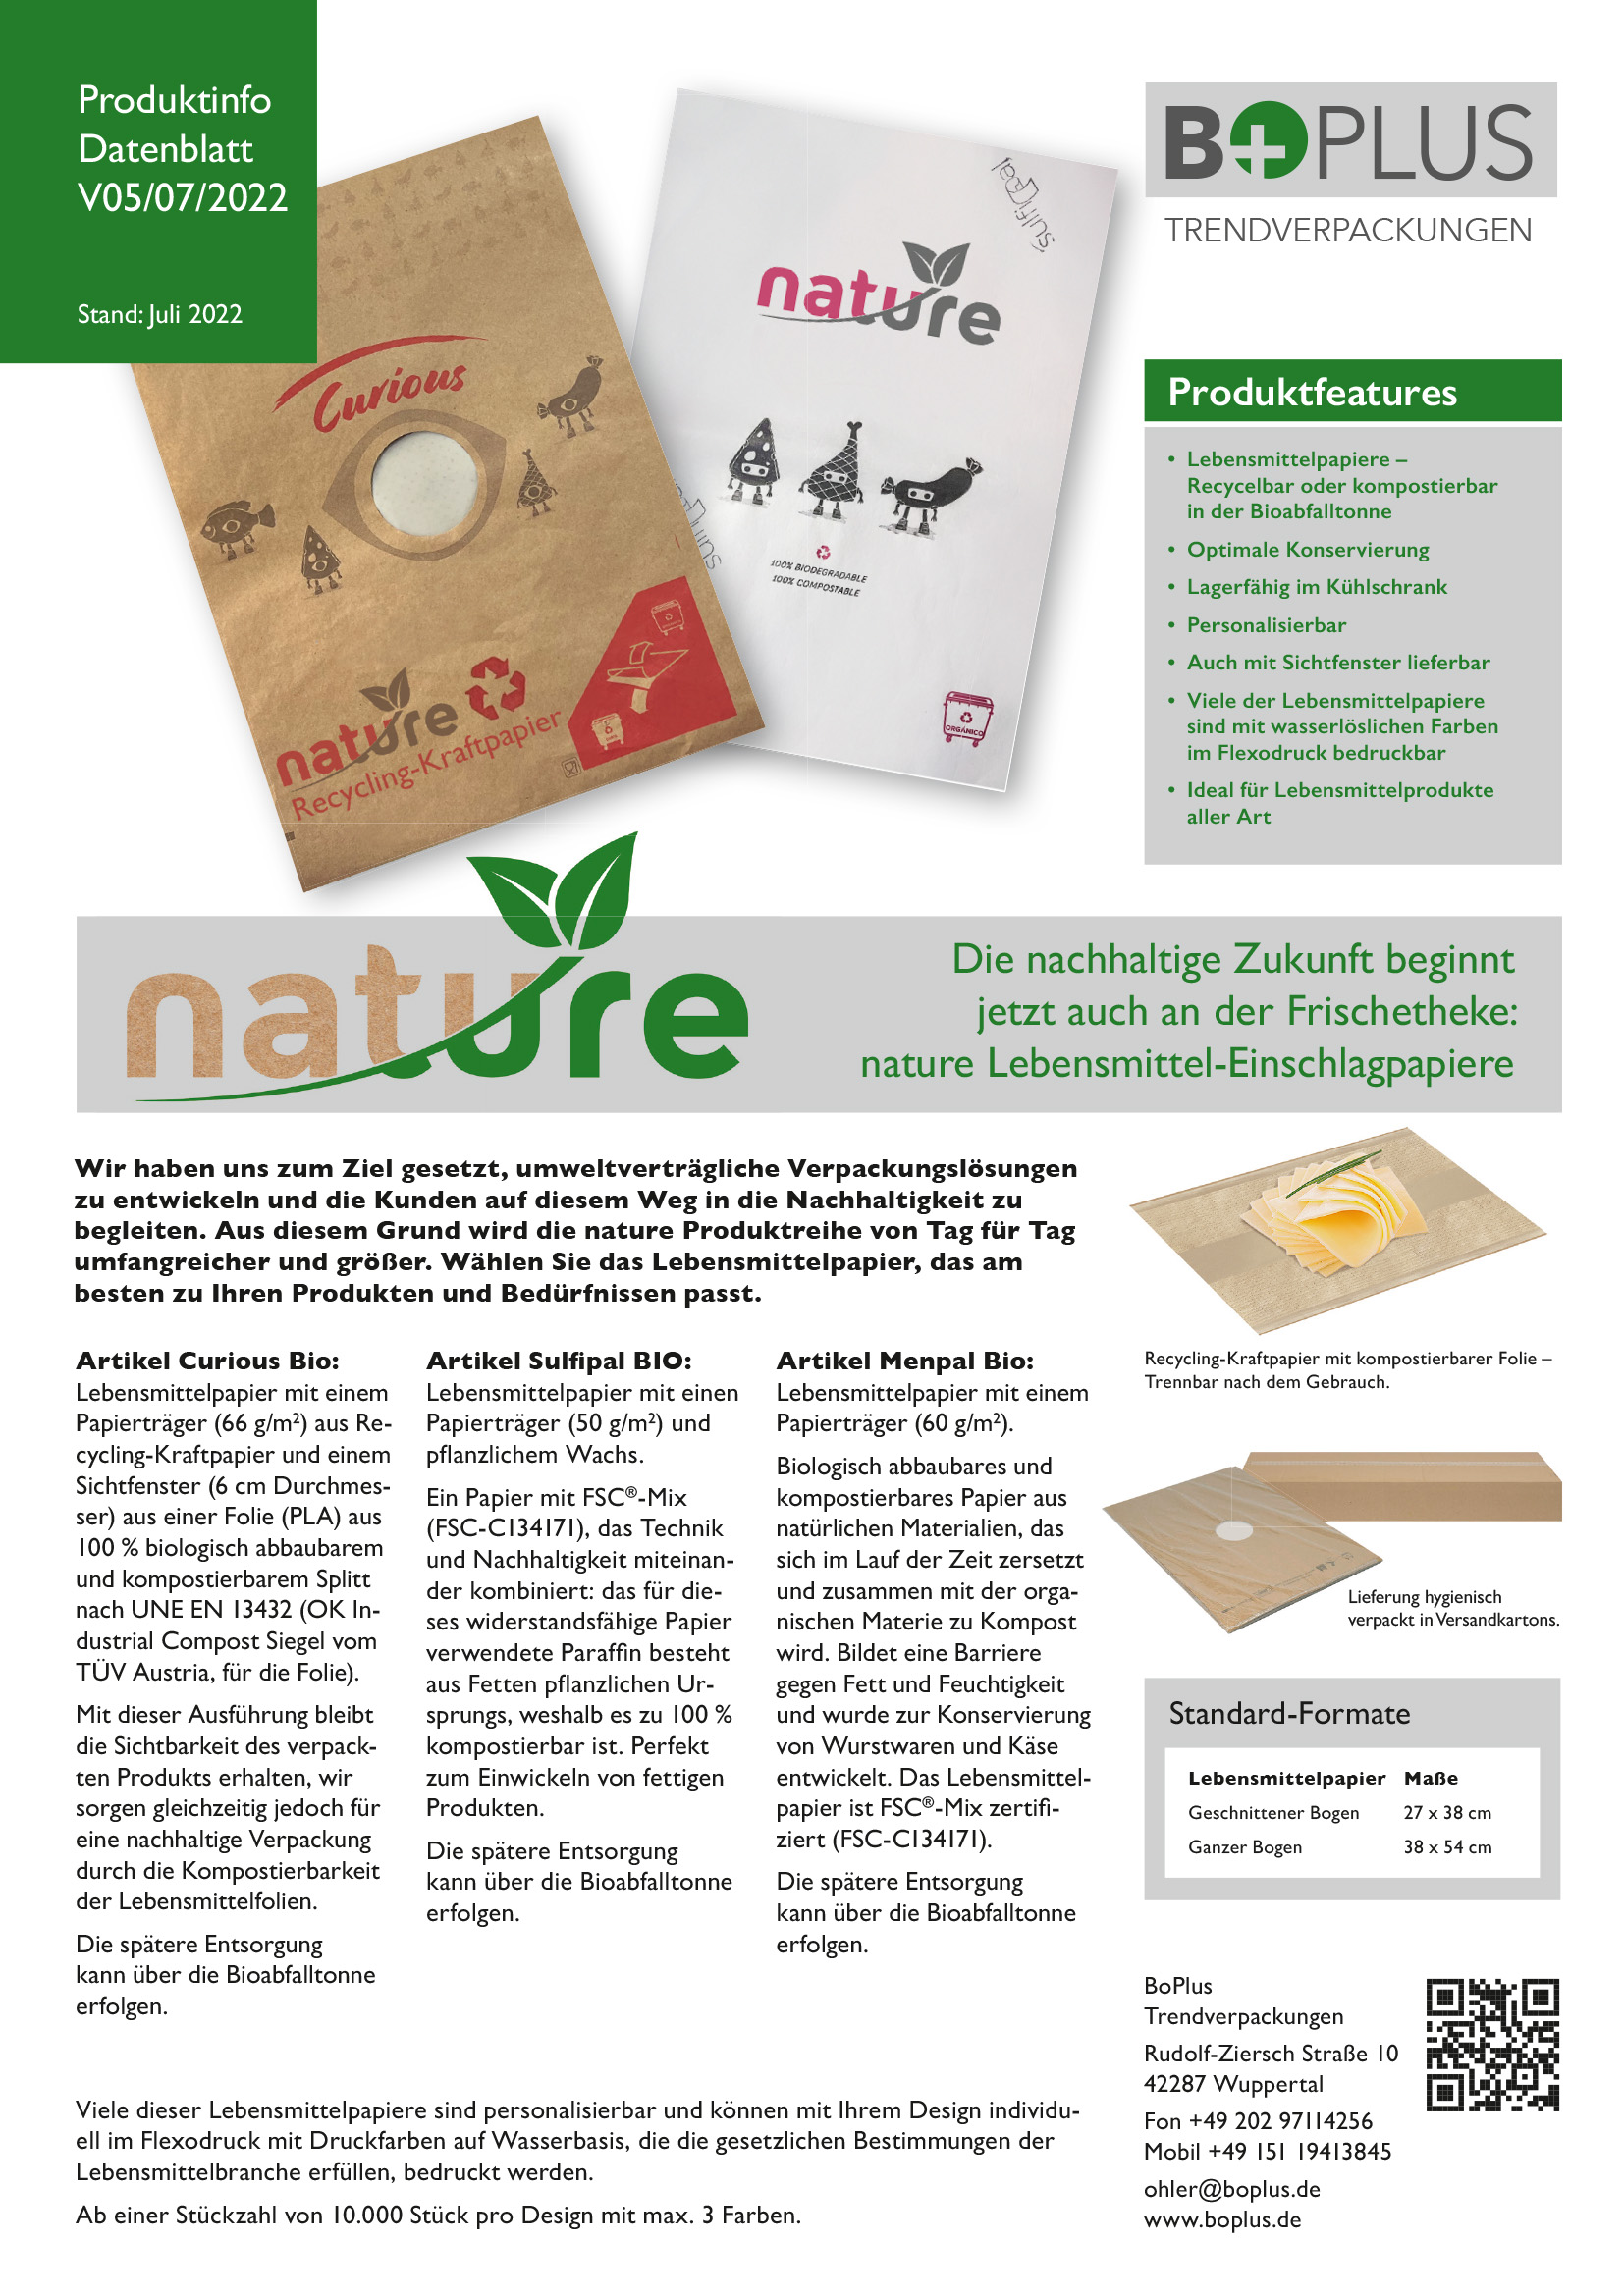 BOplus nature fresh bags Produktinfo V05 07 2022